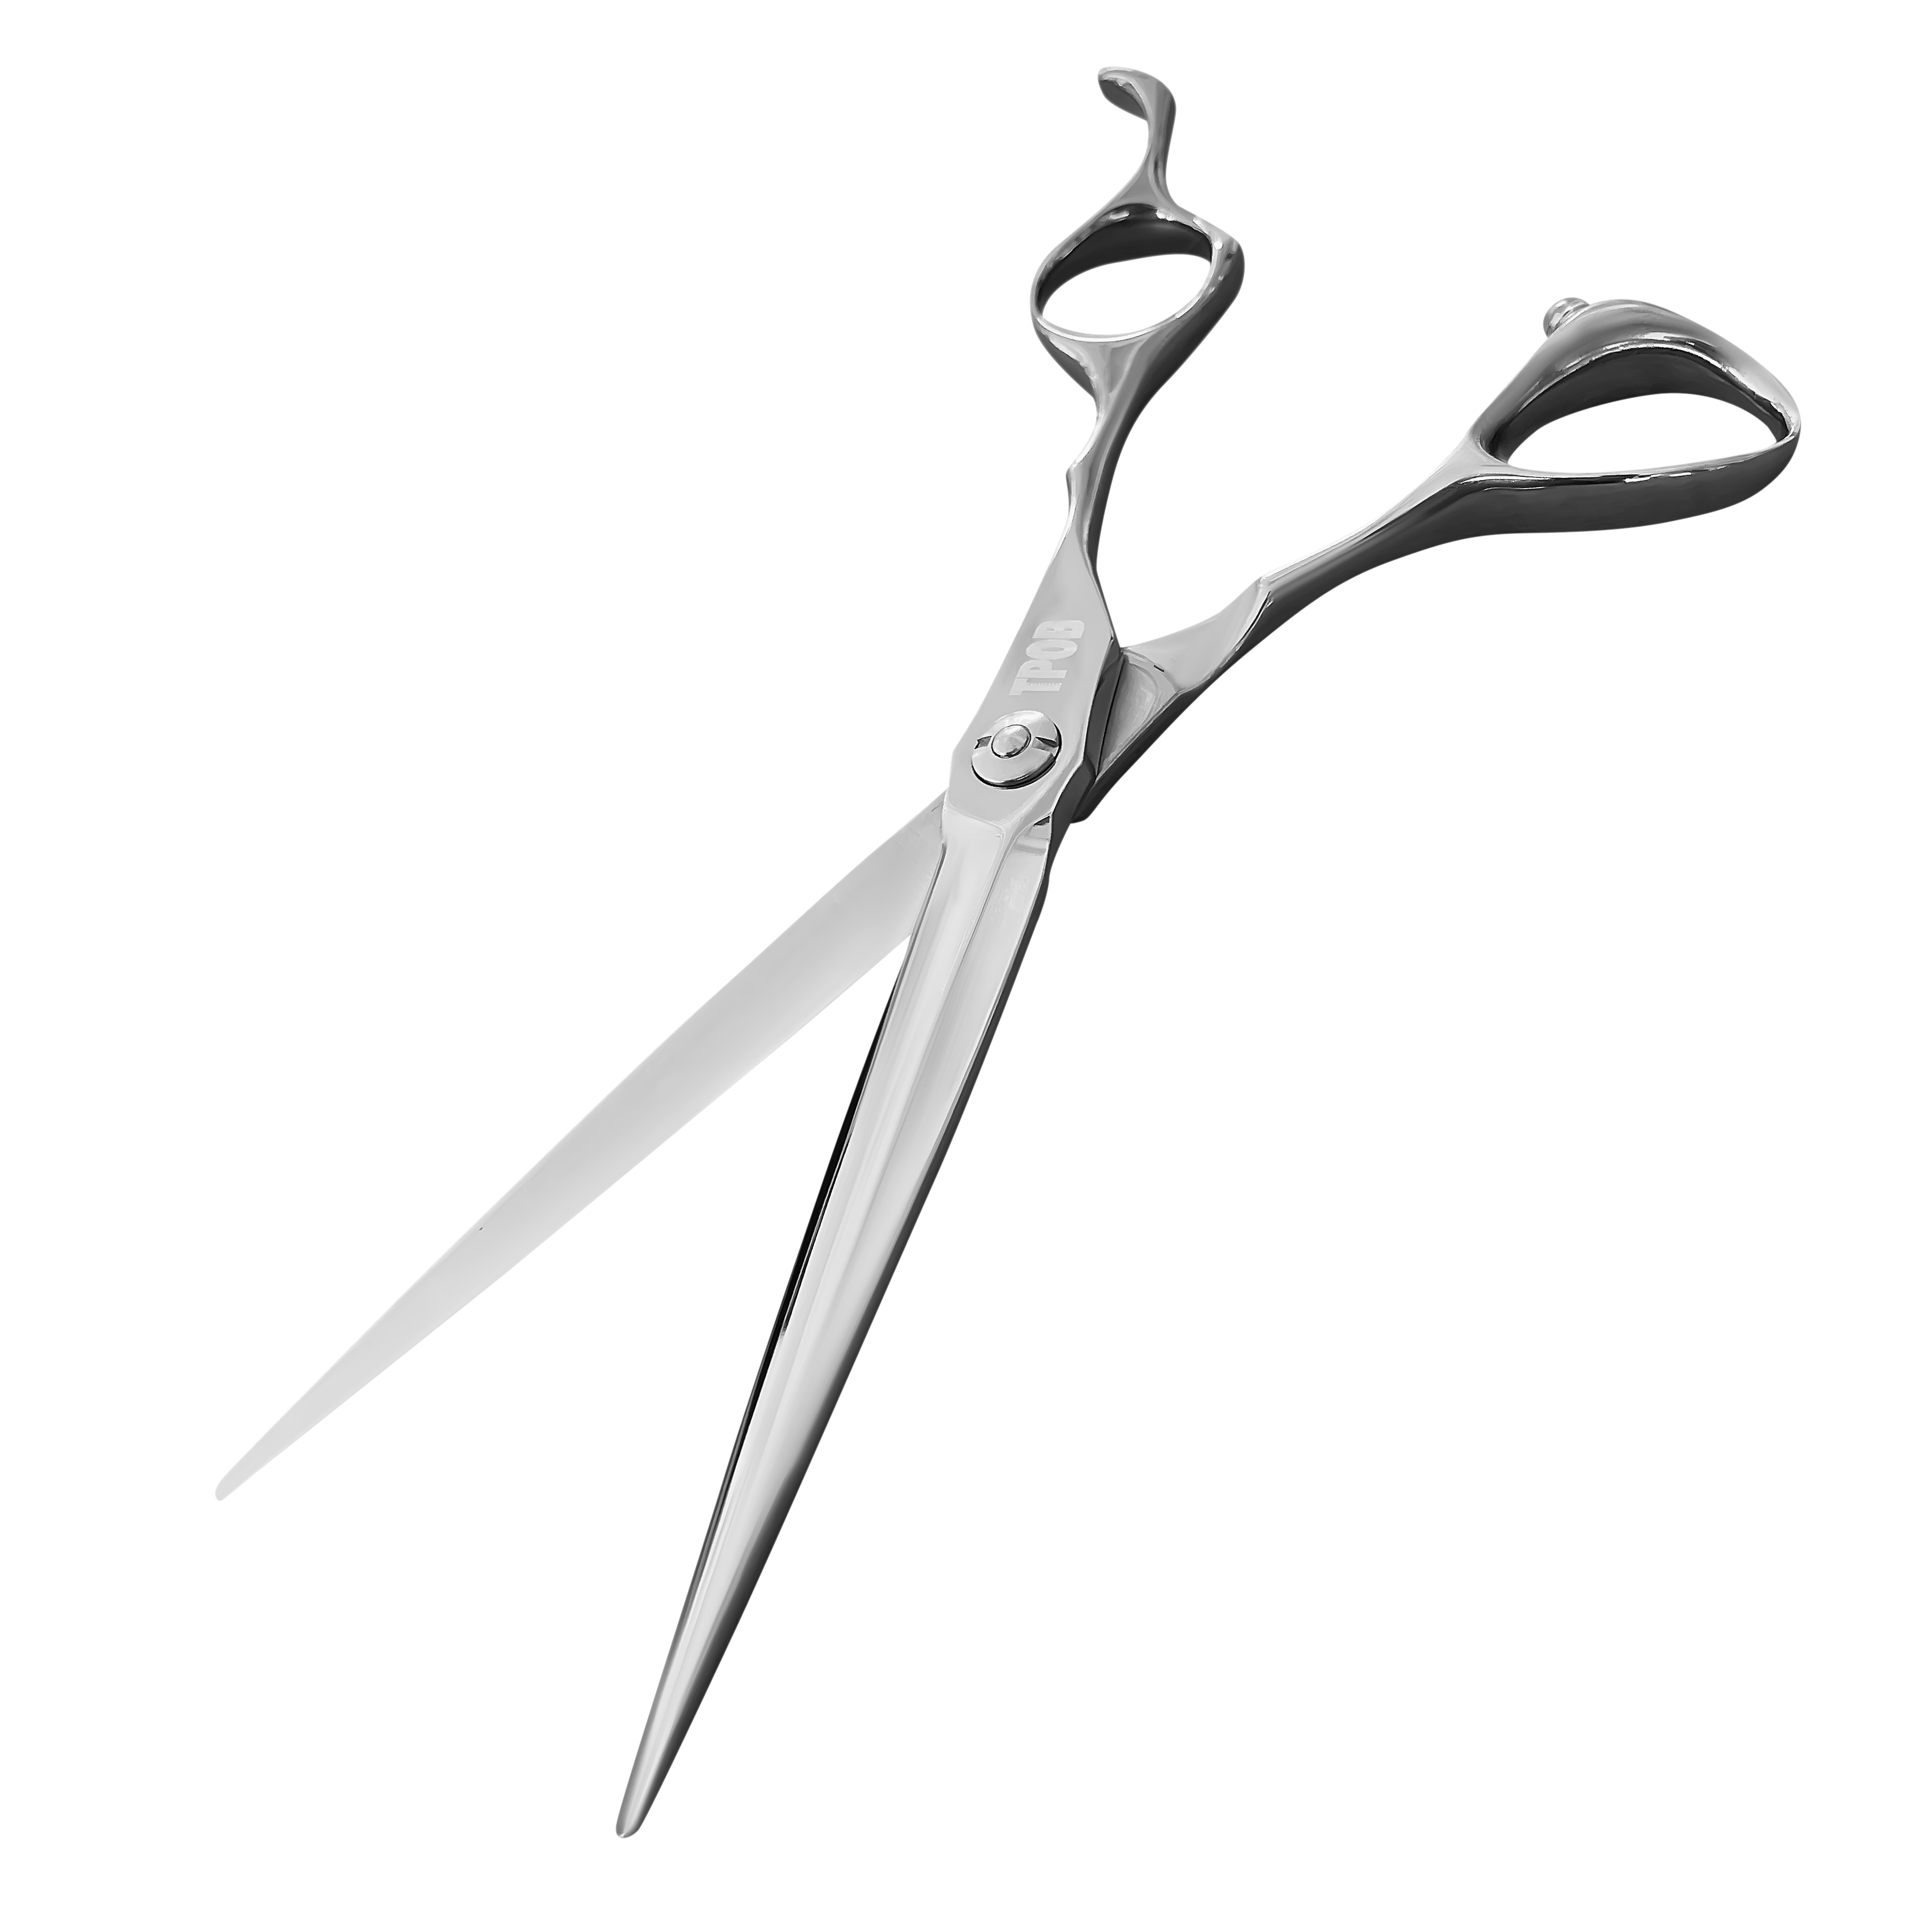 Knife Scissors W/ Board For Speedy Chopping - Inspire Uplift